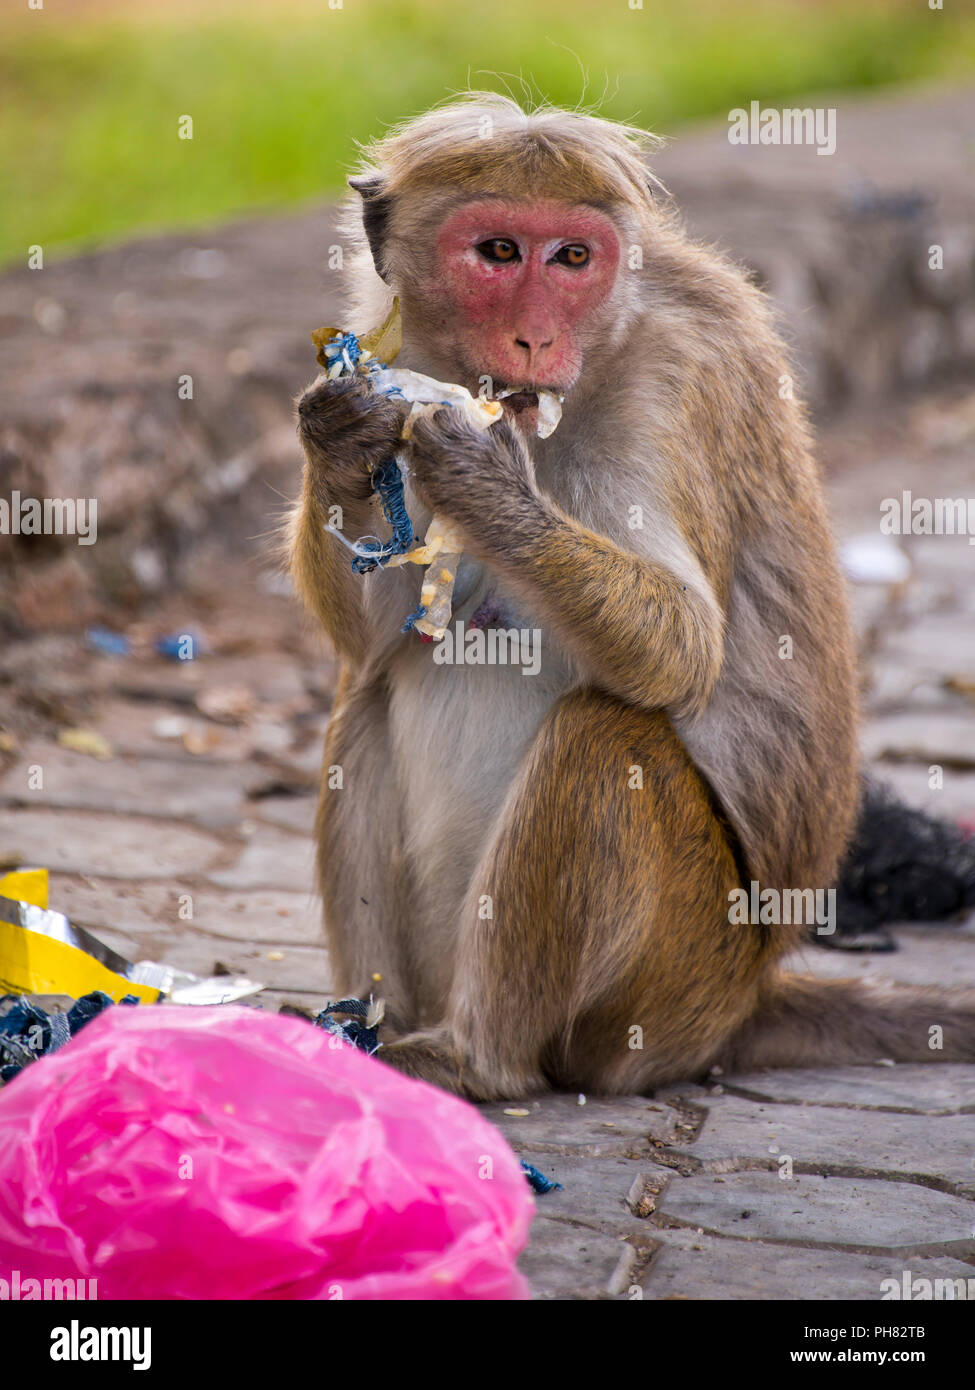 Verticale fino in prossimità di una scimmia di scavenging del cibo in un bidone della spazzatura. Foto Stock